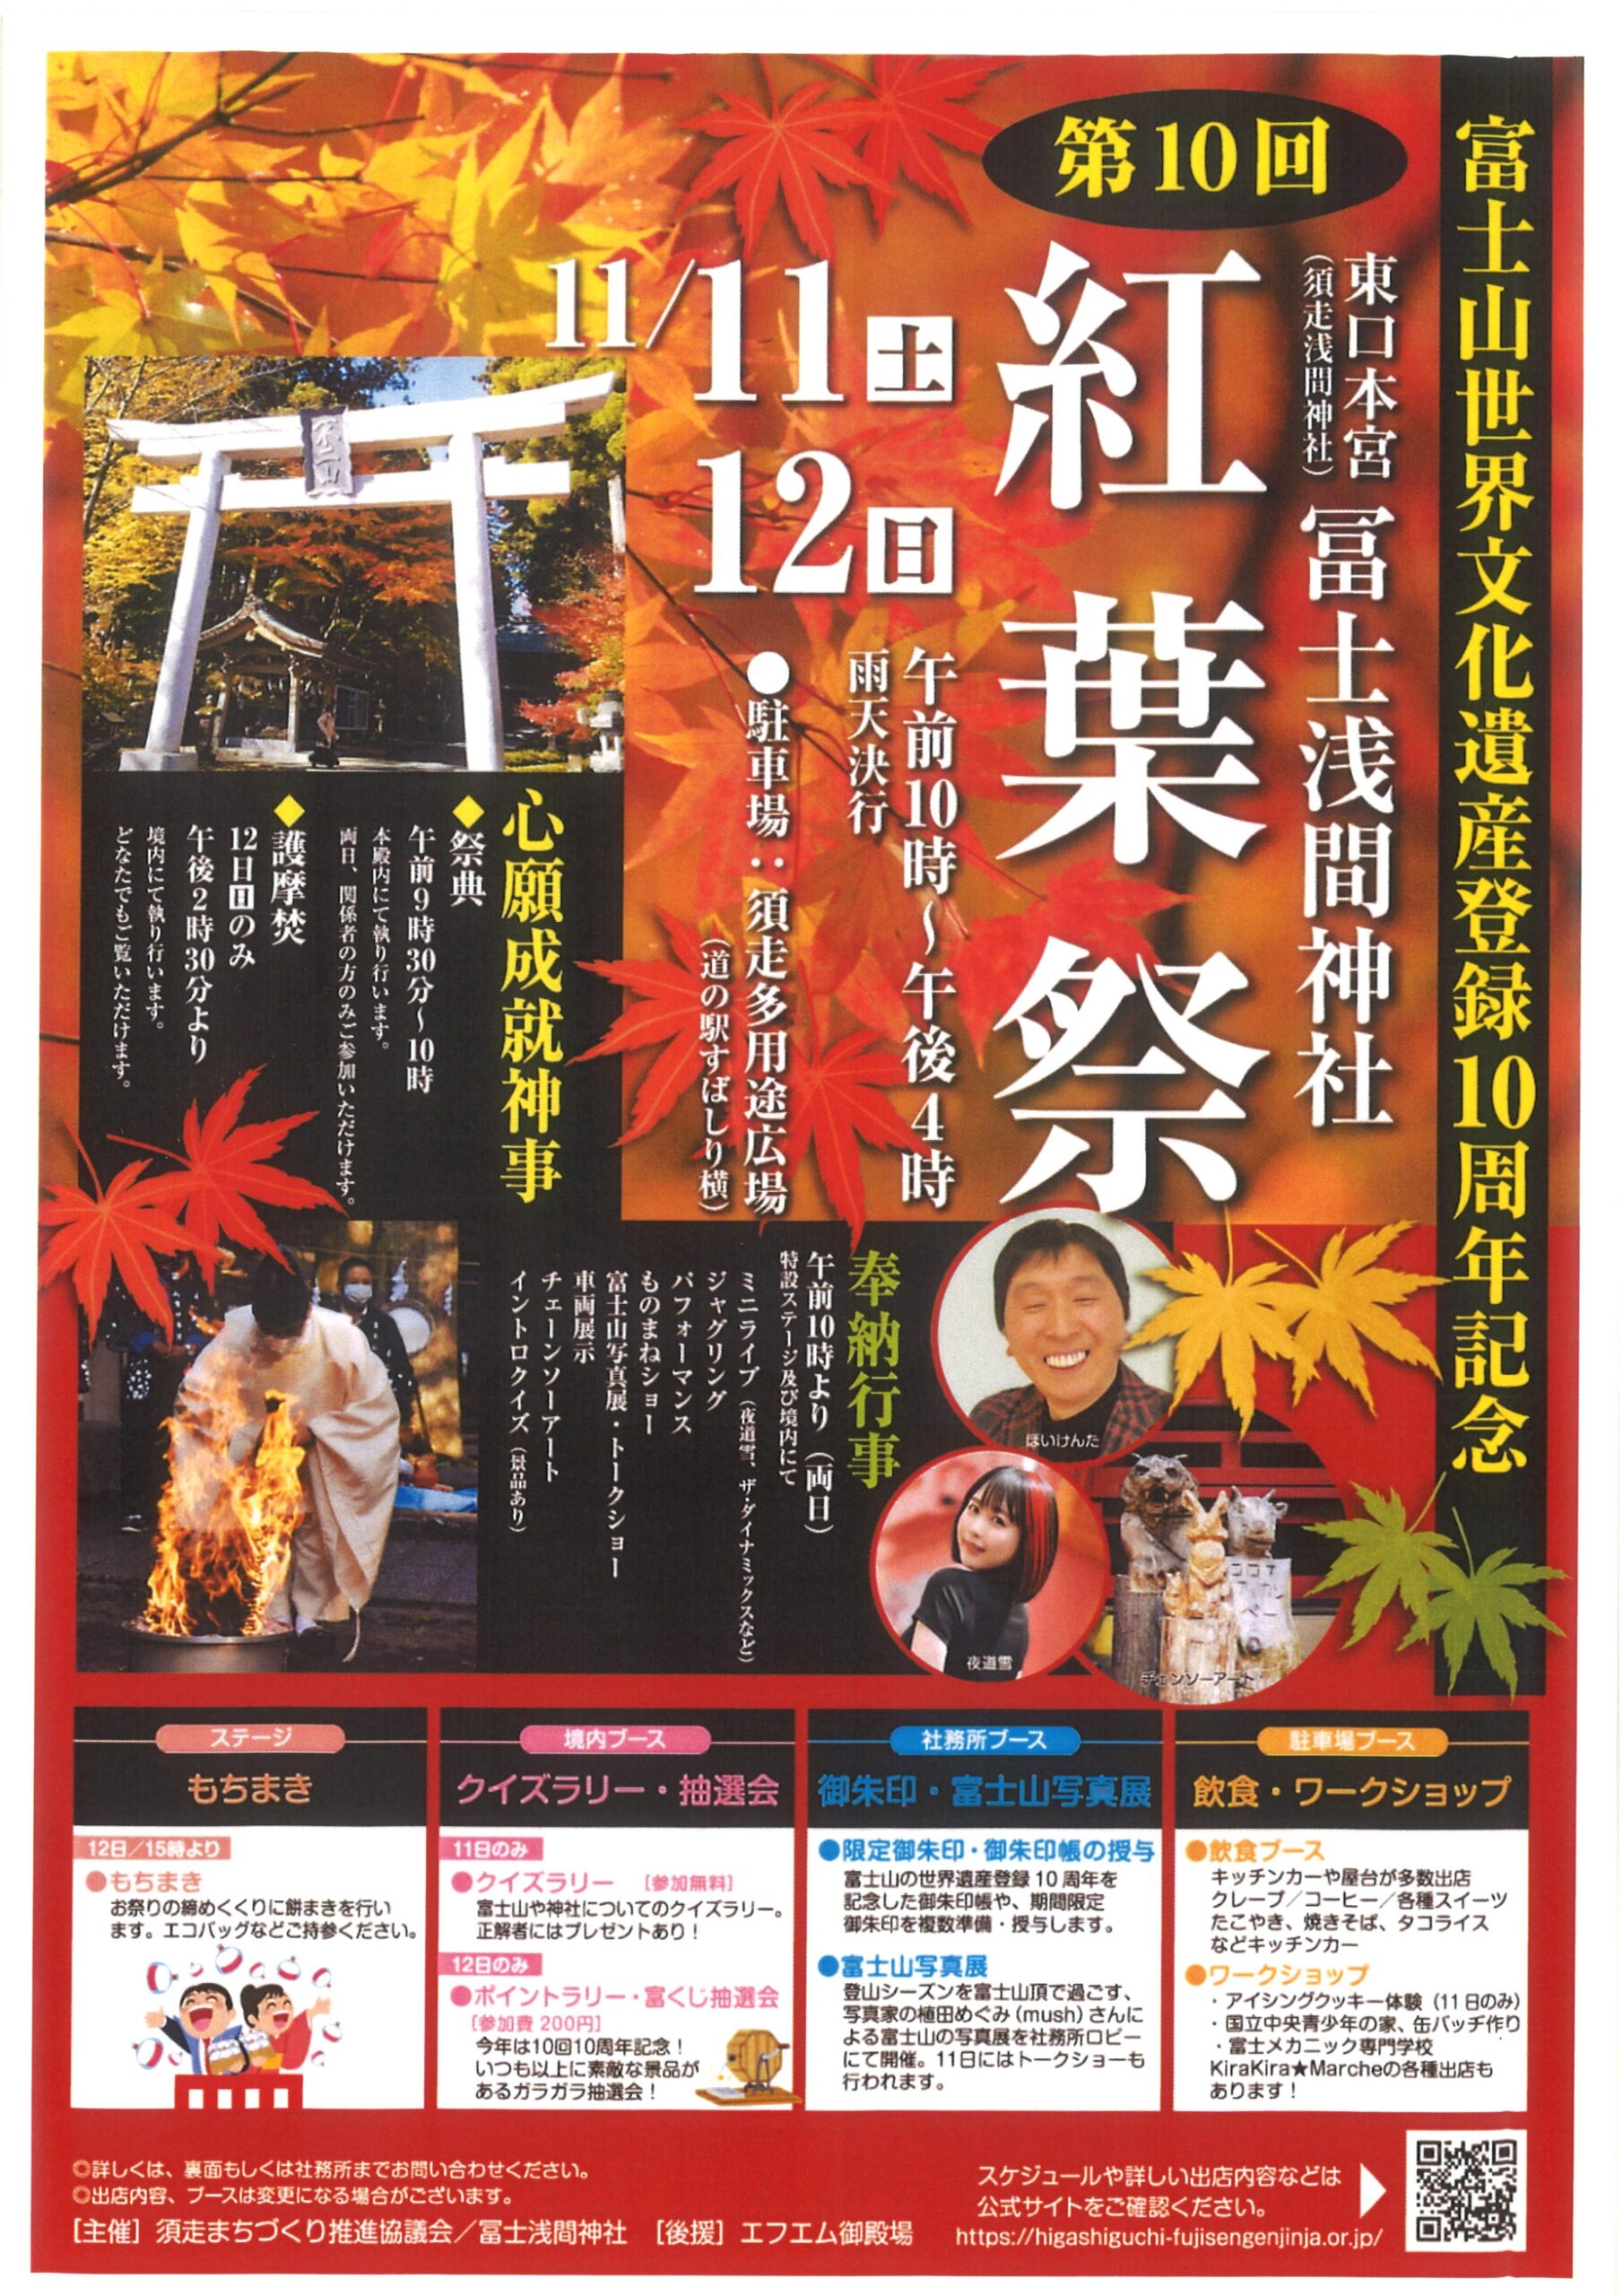 世界文化遺産「富士山」登録１０周年・第１０回冨士浅間神社 紅葉祭